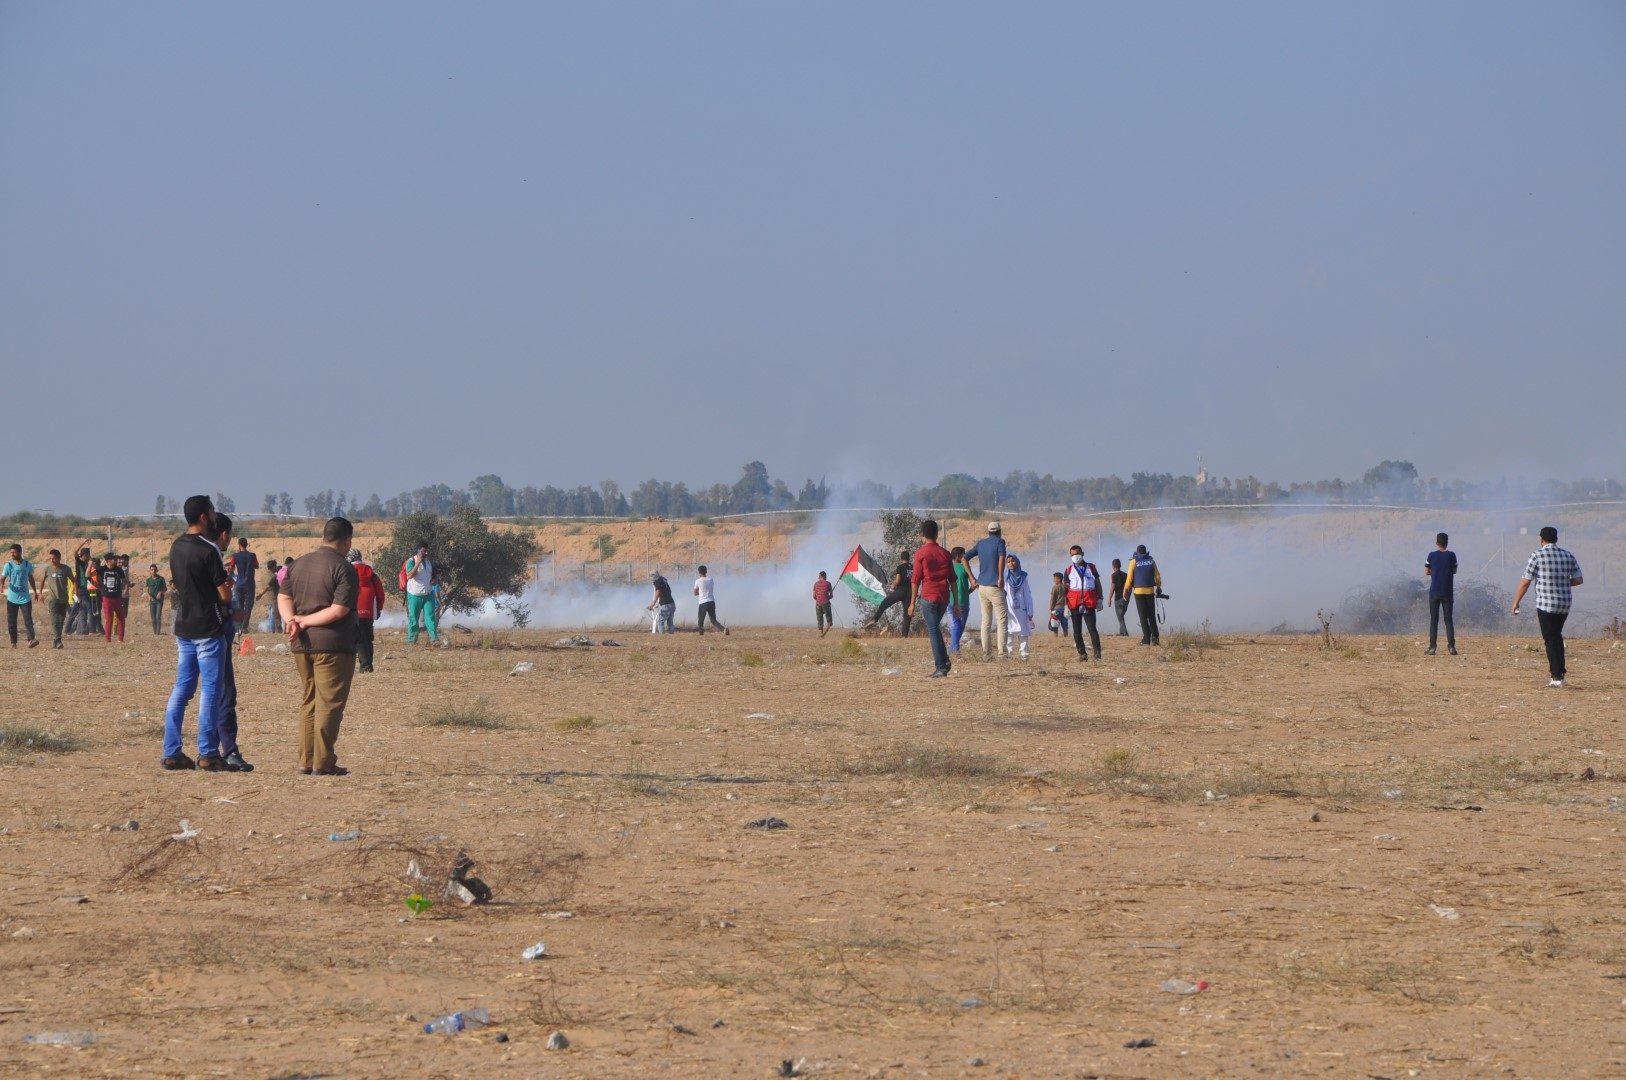 great march return gaza tear gas 61st week